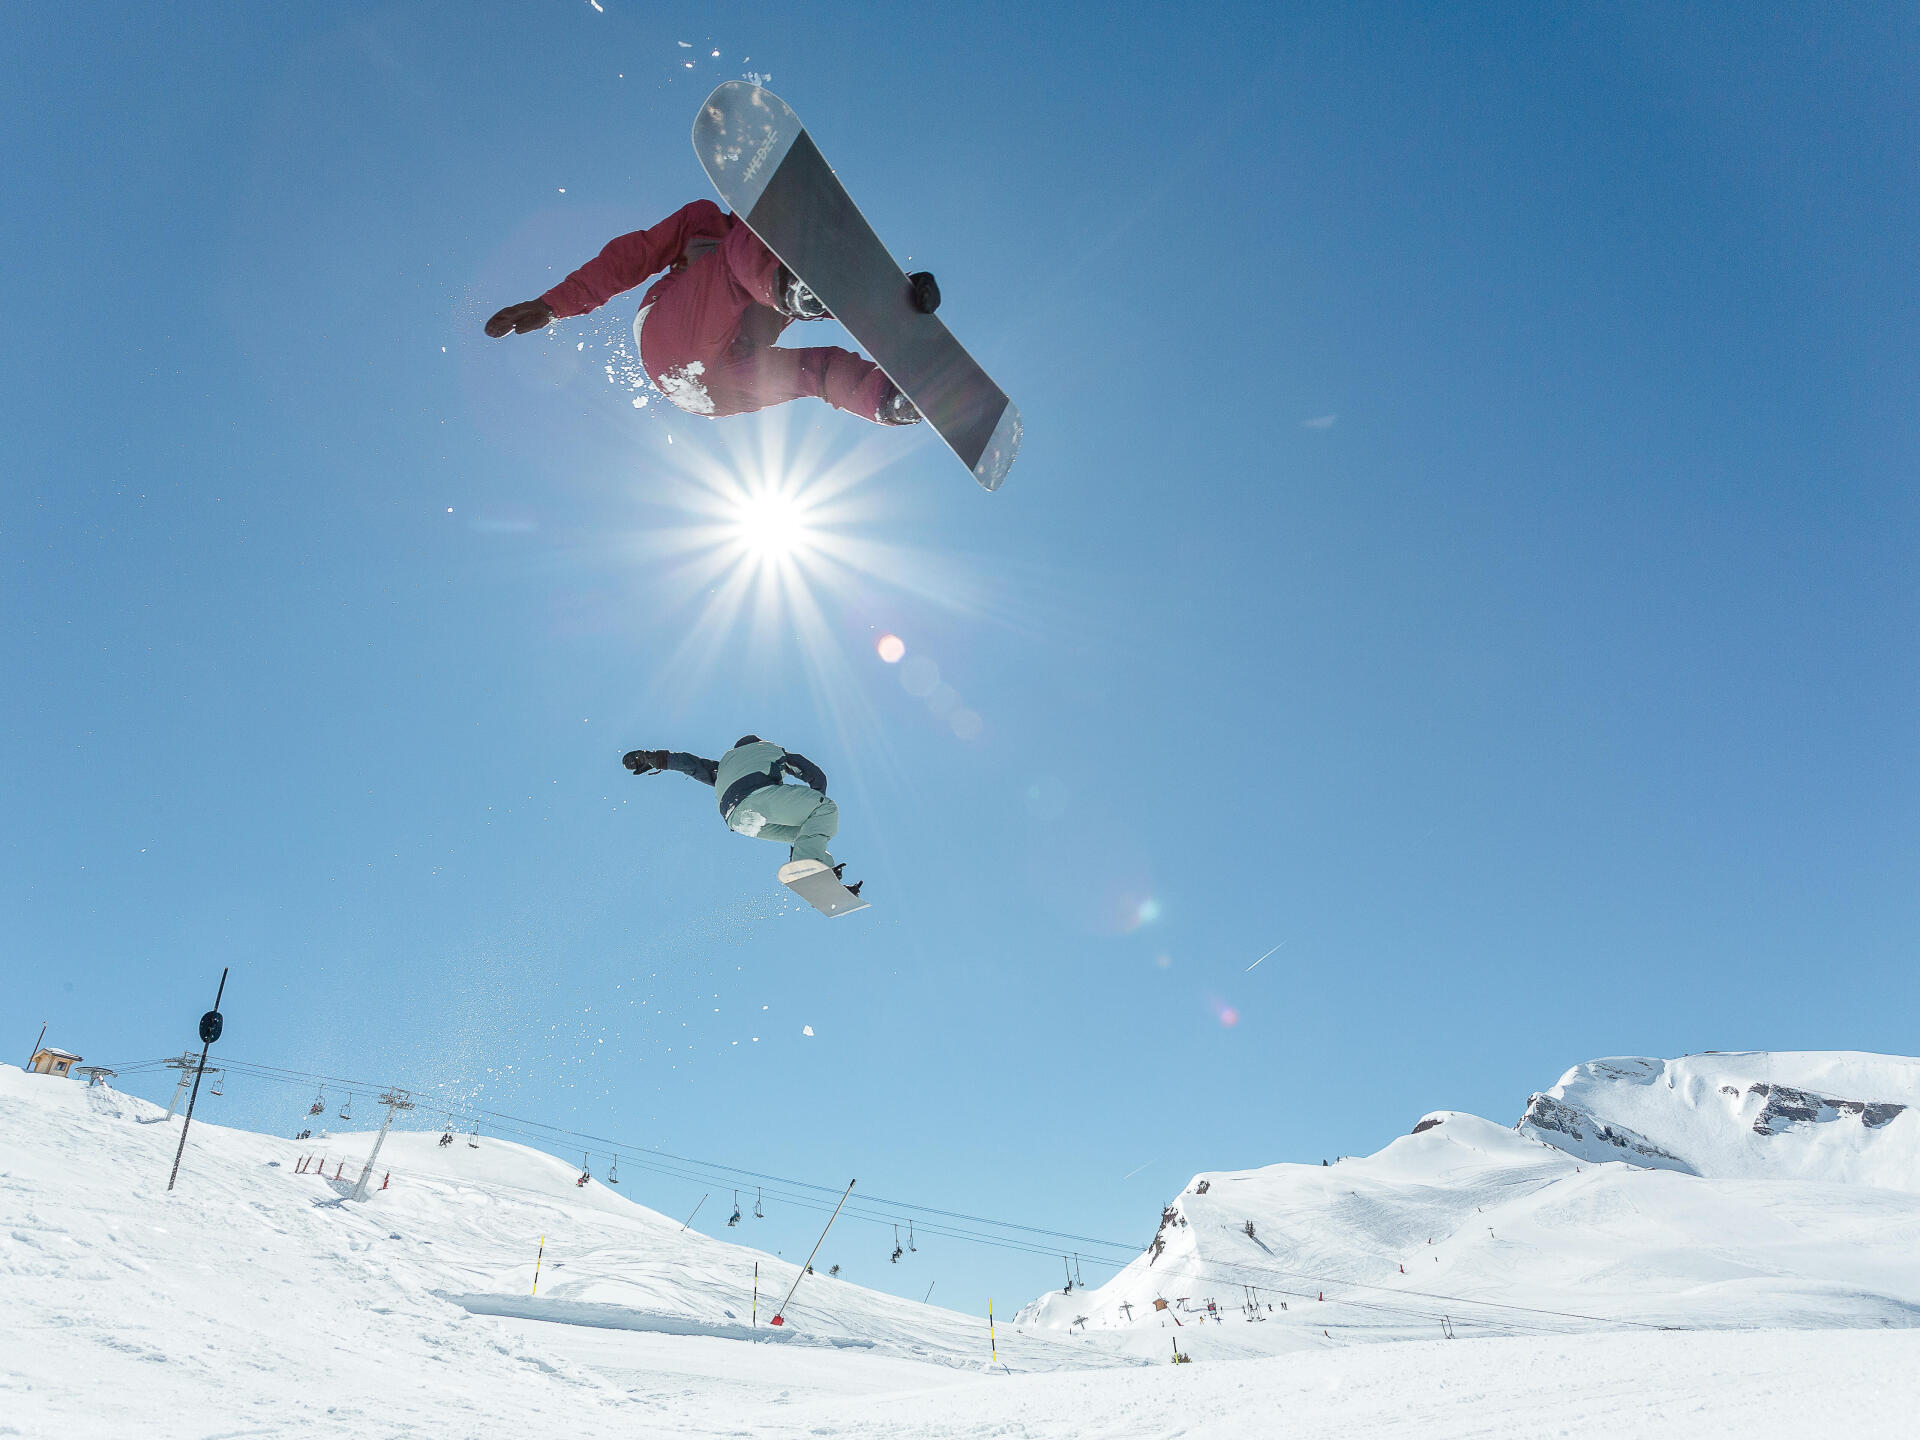 Women's Waterproof Snowboard Salopettes SNB BIB 900 - Beige DREAMSCAPE